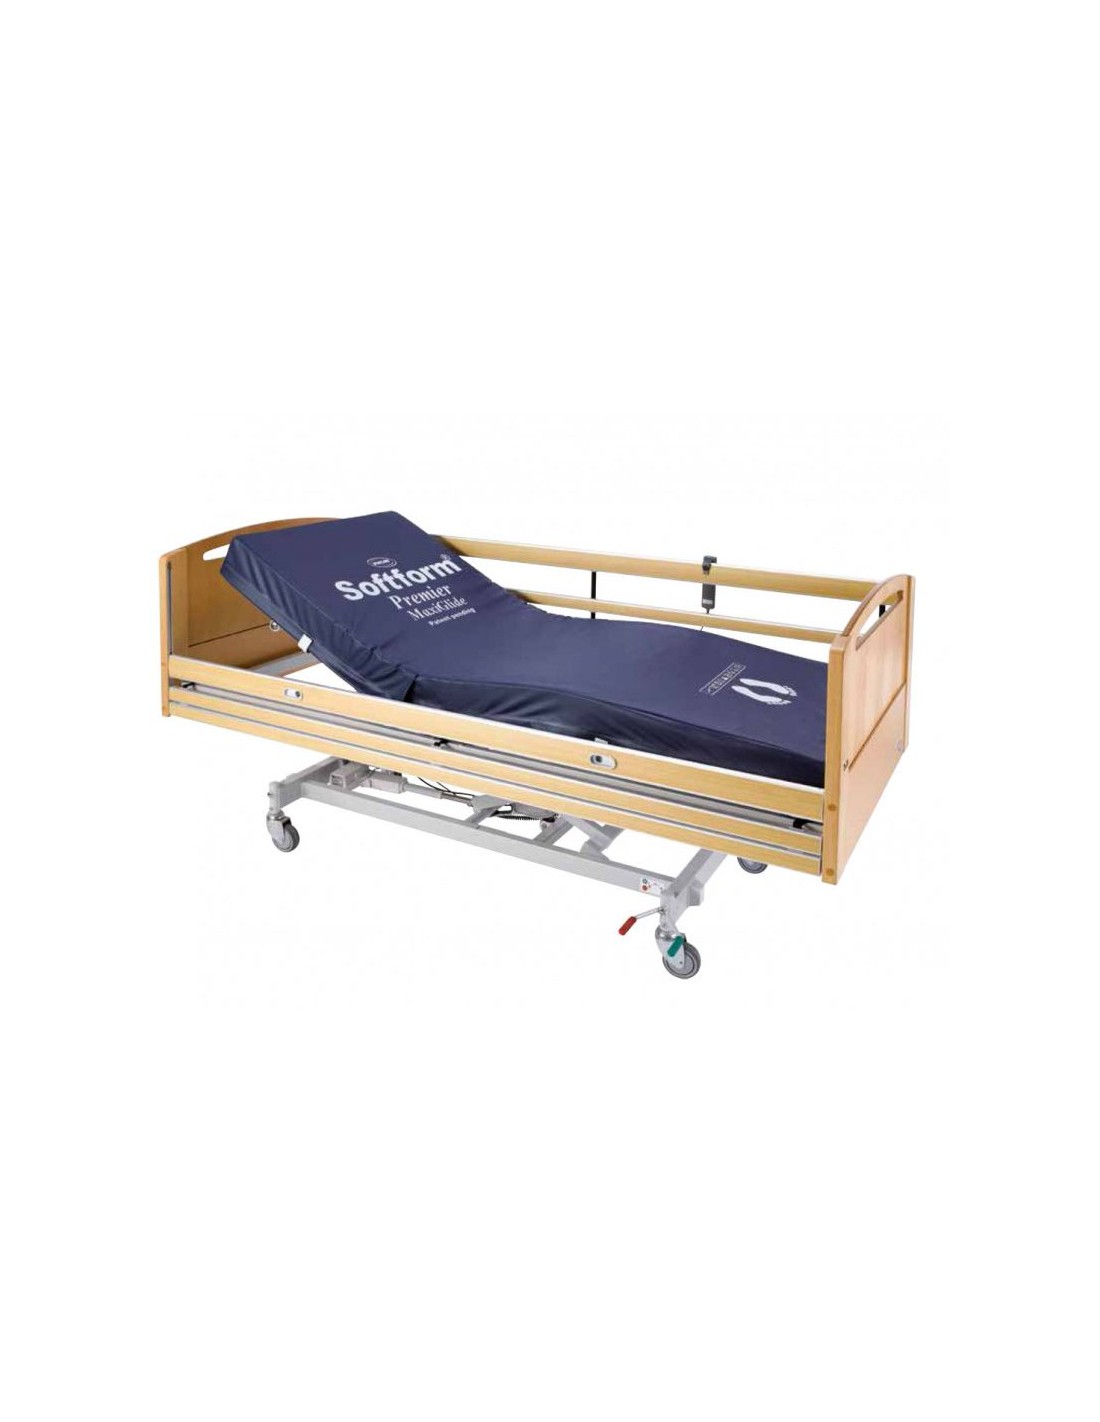 Colchón articulado Medical, especial camas articuladas.